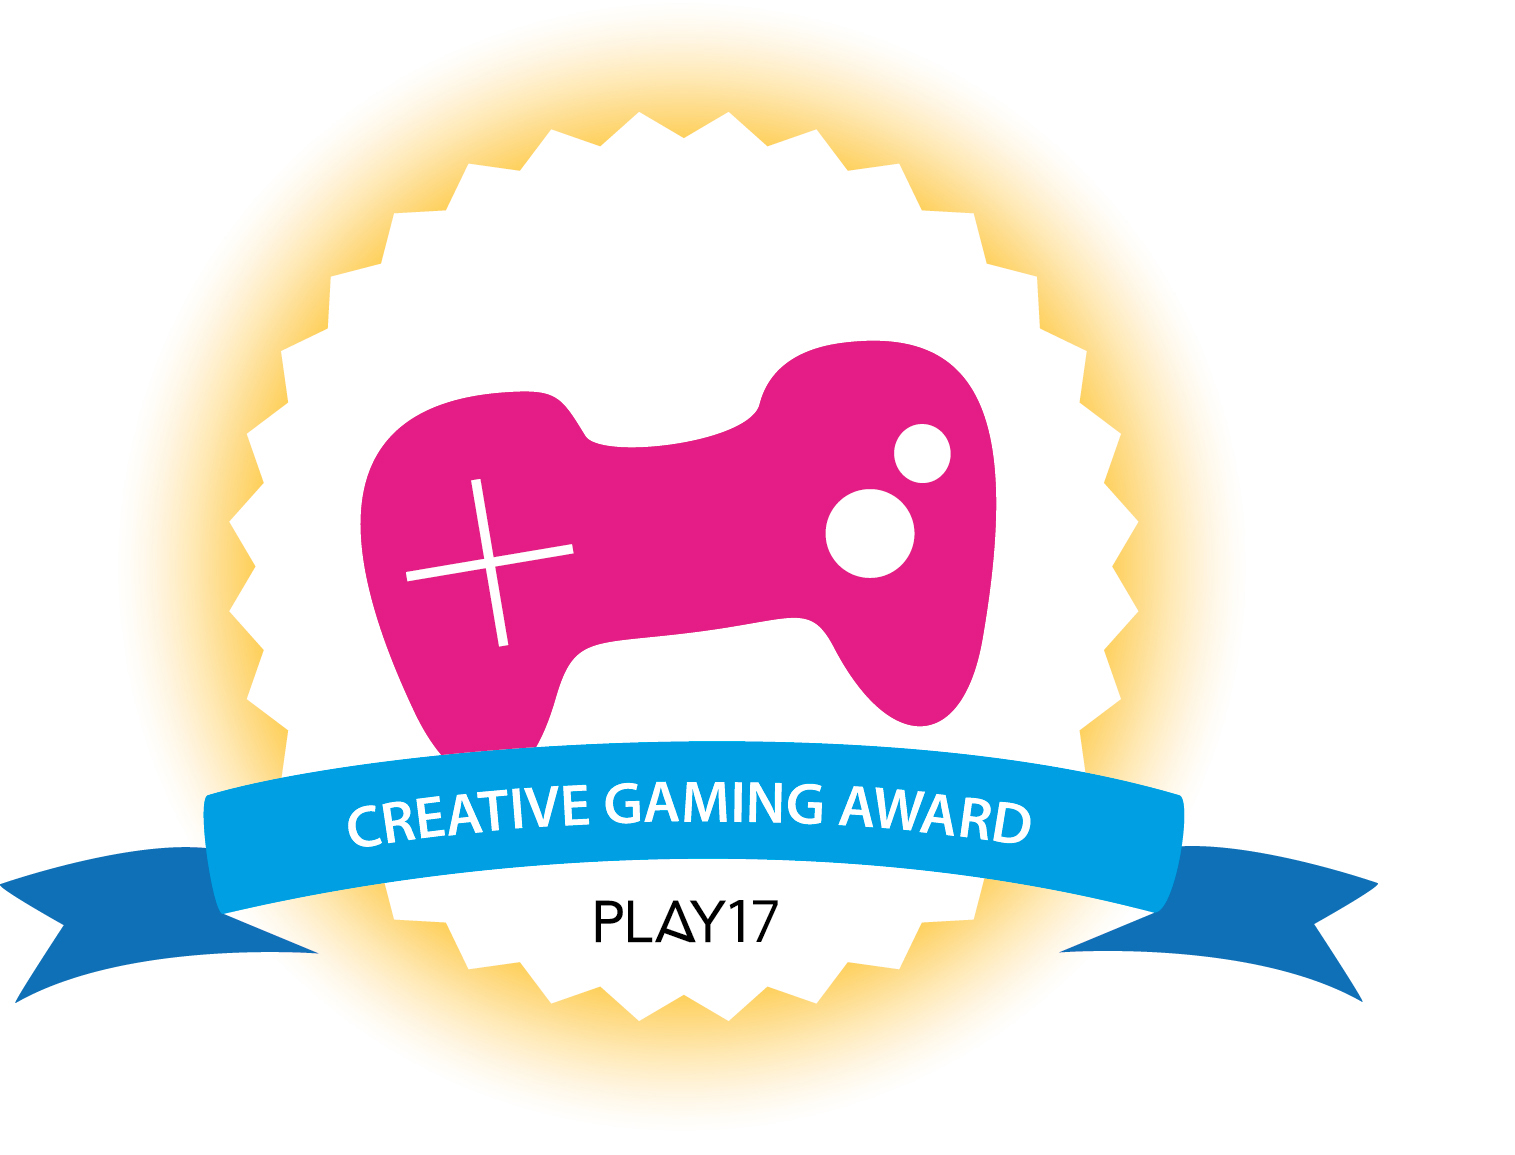 Creative Gaming Award 2017